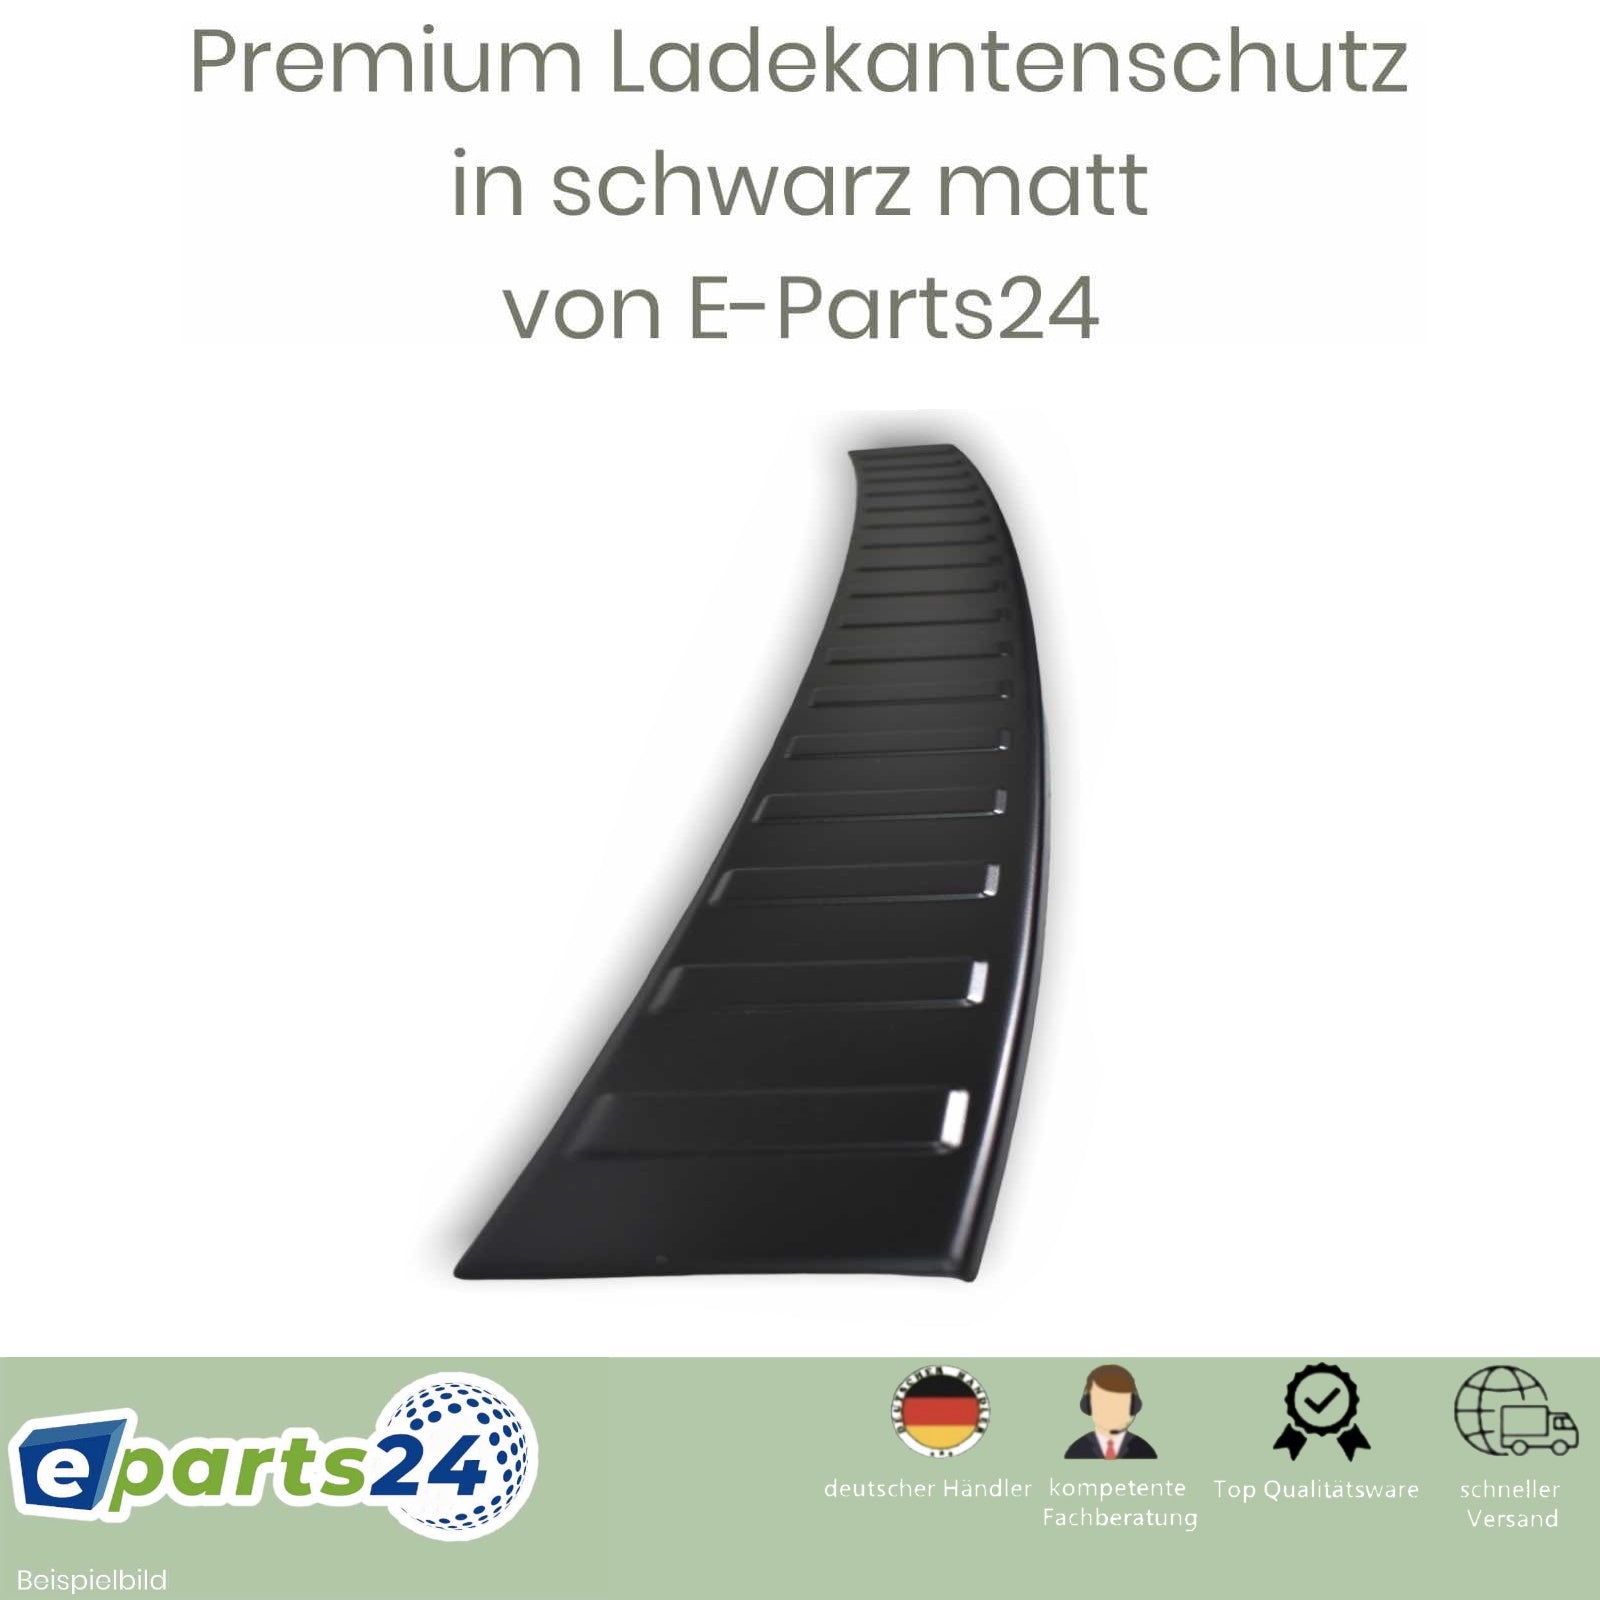 Ladekantenschutz für Kombi 5F Cupra Seat ST FR Edelsta Leon 3 – ab 2014- E-Parts24